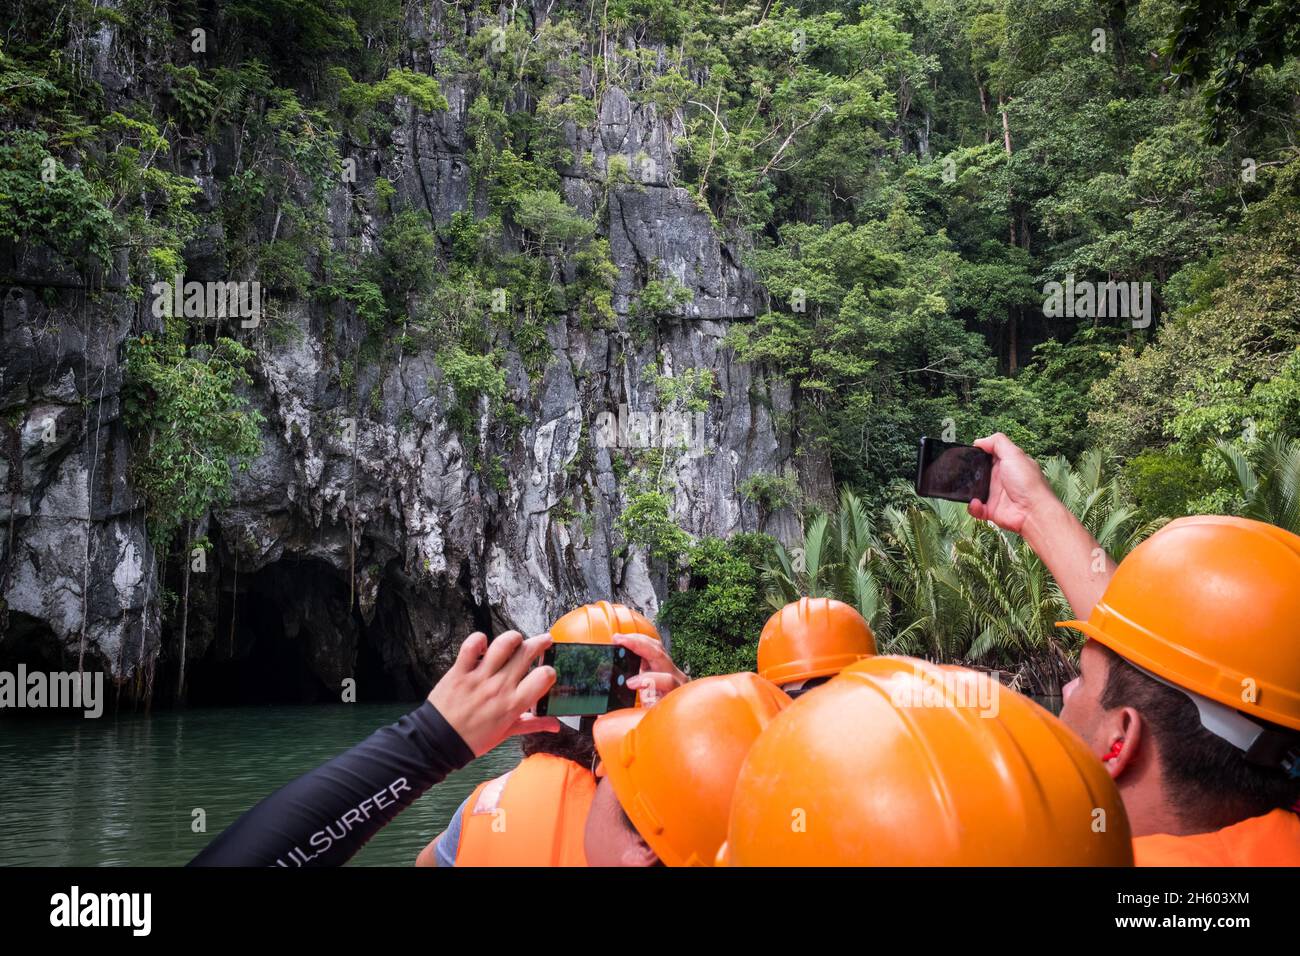 Juillet 2017.L'écotourisme à la rivière souterraine, une grotte côtière avec des kilomètres d'eau navigable et qui est reconnue comme l'une des sept merveilles naturelles du monde, fournit une alternative économique aux moyens de subsistance traditionnels de la forêt.Plage de Sabong, Puerto Princesa, Palawan, Philippines. Banque D'Images